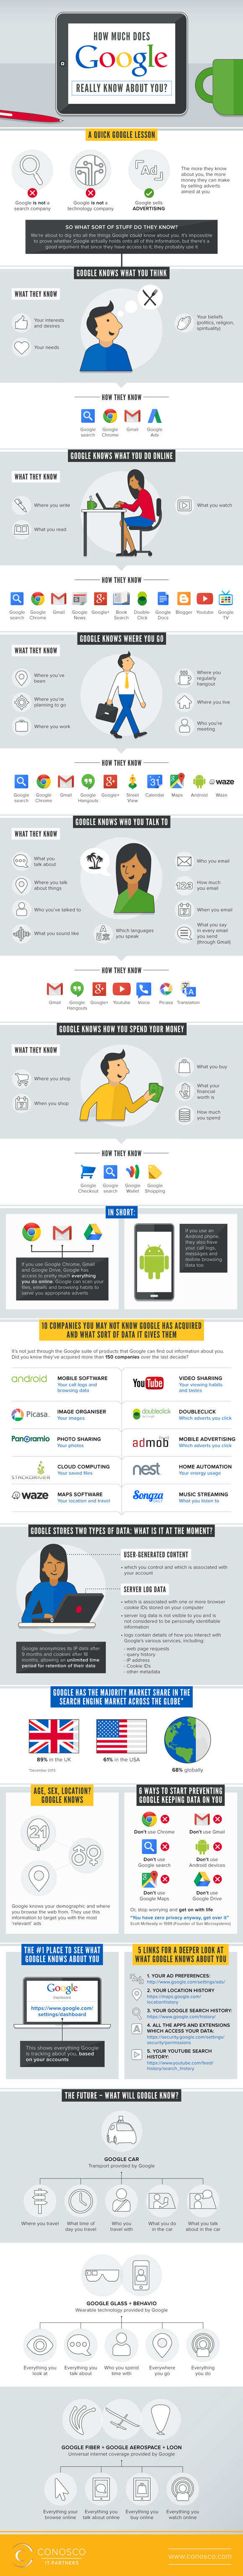 Infografía como Google sabe todo de nuestra vida online